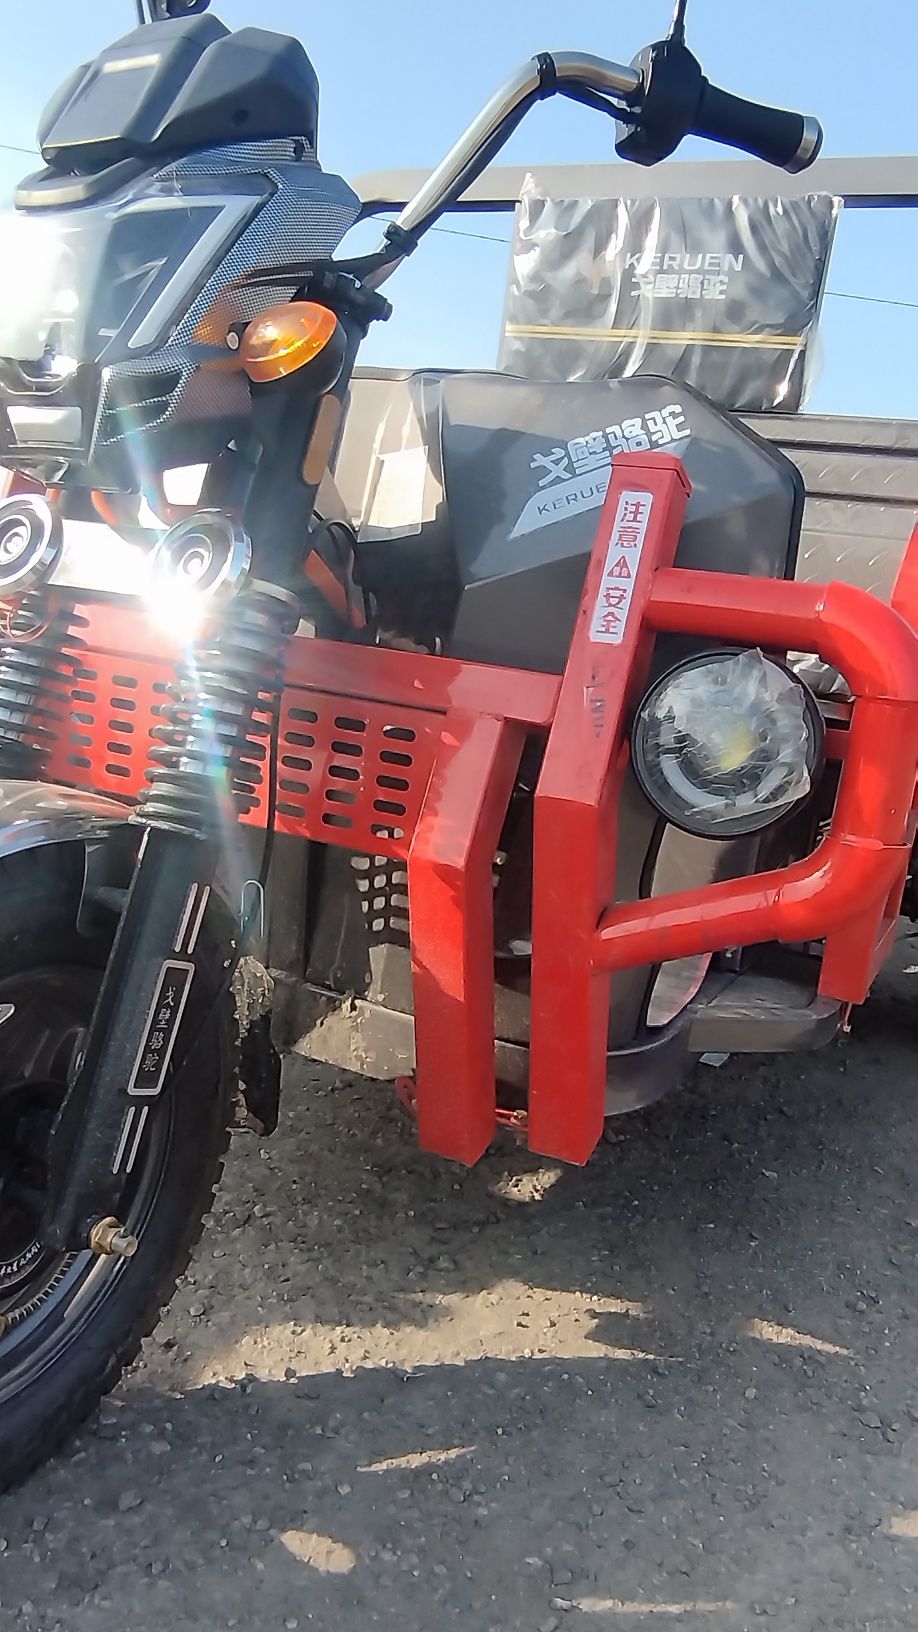 Трициклы универсал муравей грузовой мото мотоцикл моторолер купить